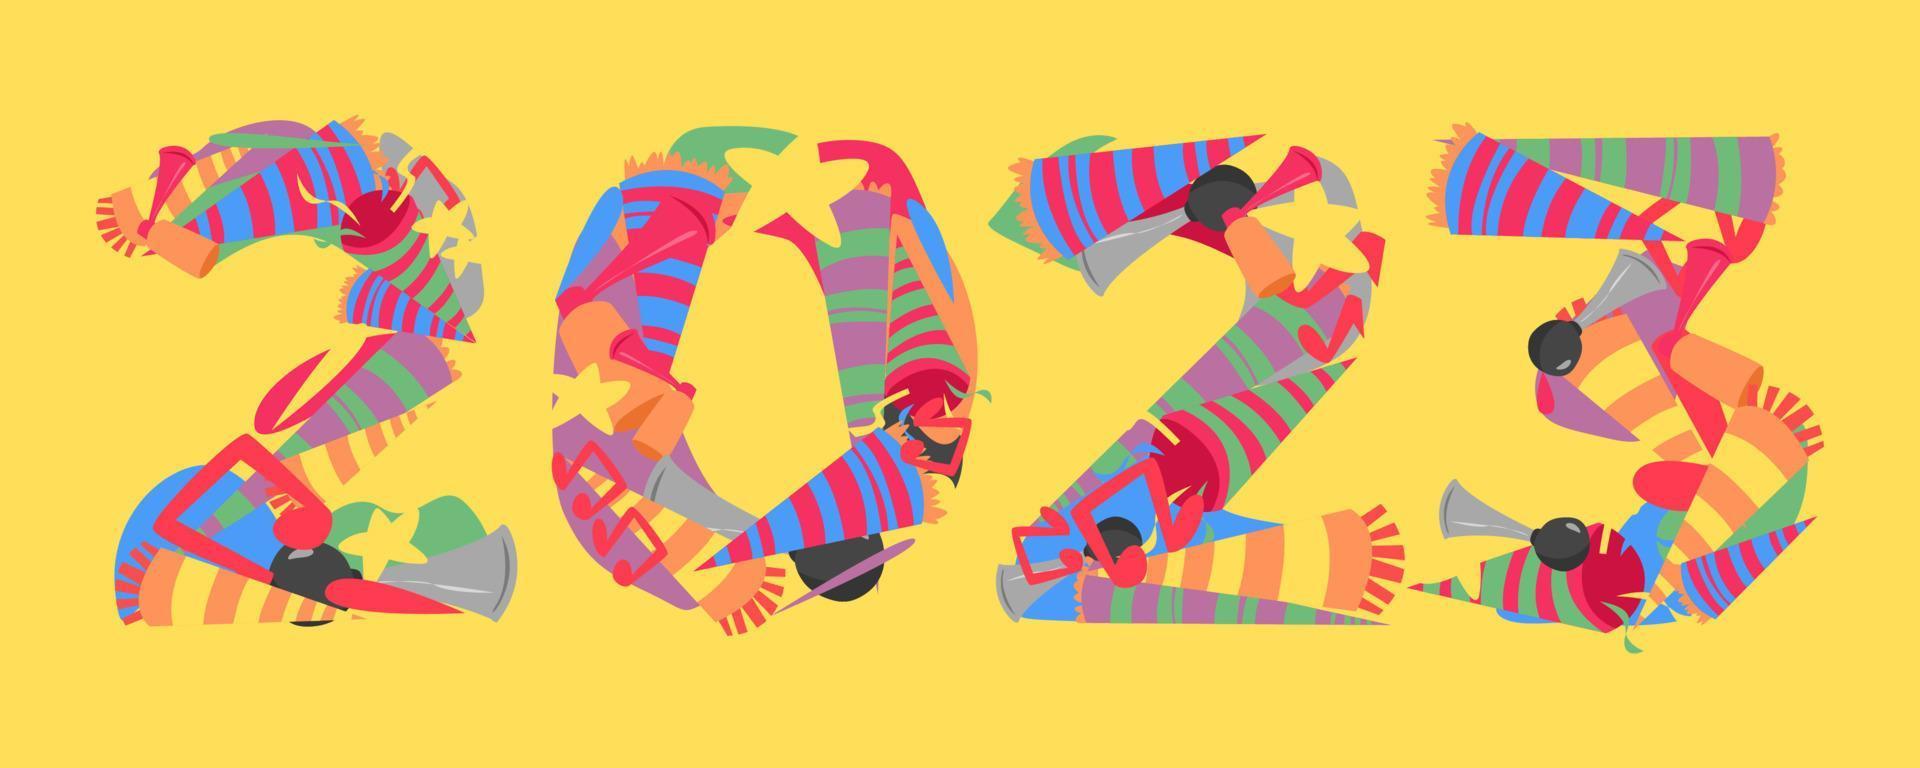 2023-Schrifttypografie besteht aus Trompeten-Icon-Set, Horn usw. Doodle-Collage. isolierter gelber hintergrund. neujahrskonzept für vorlage, grußkarte, druck, aufkleber, banner usw. flacher vektorstil vektor